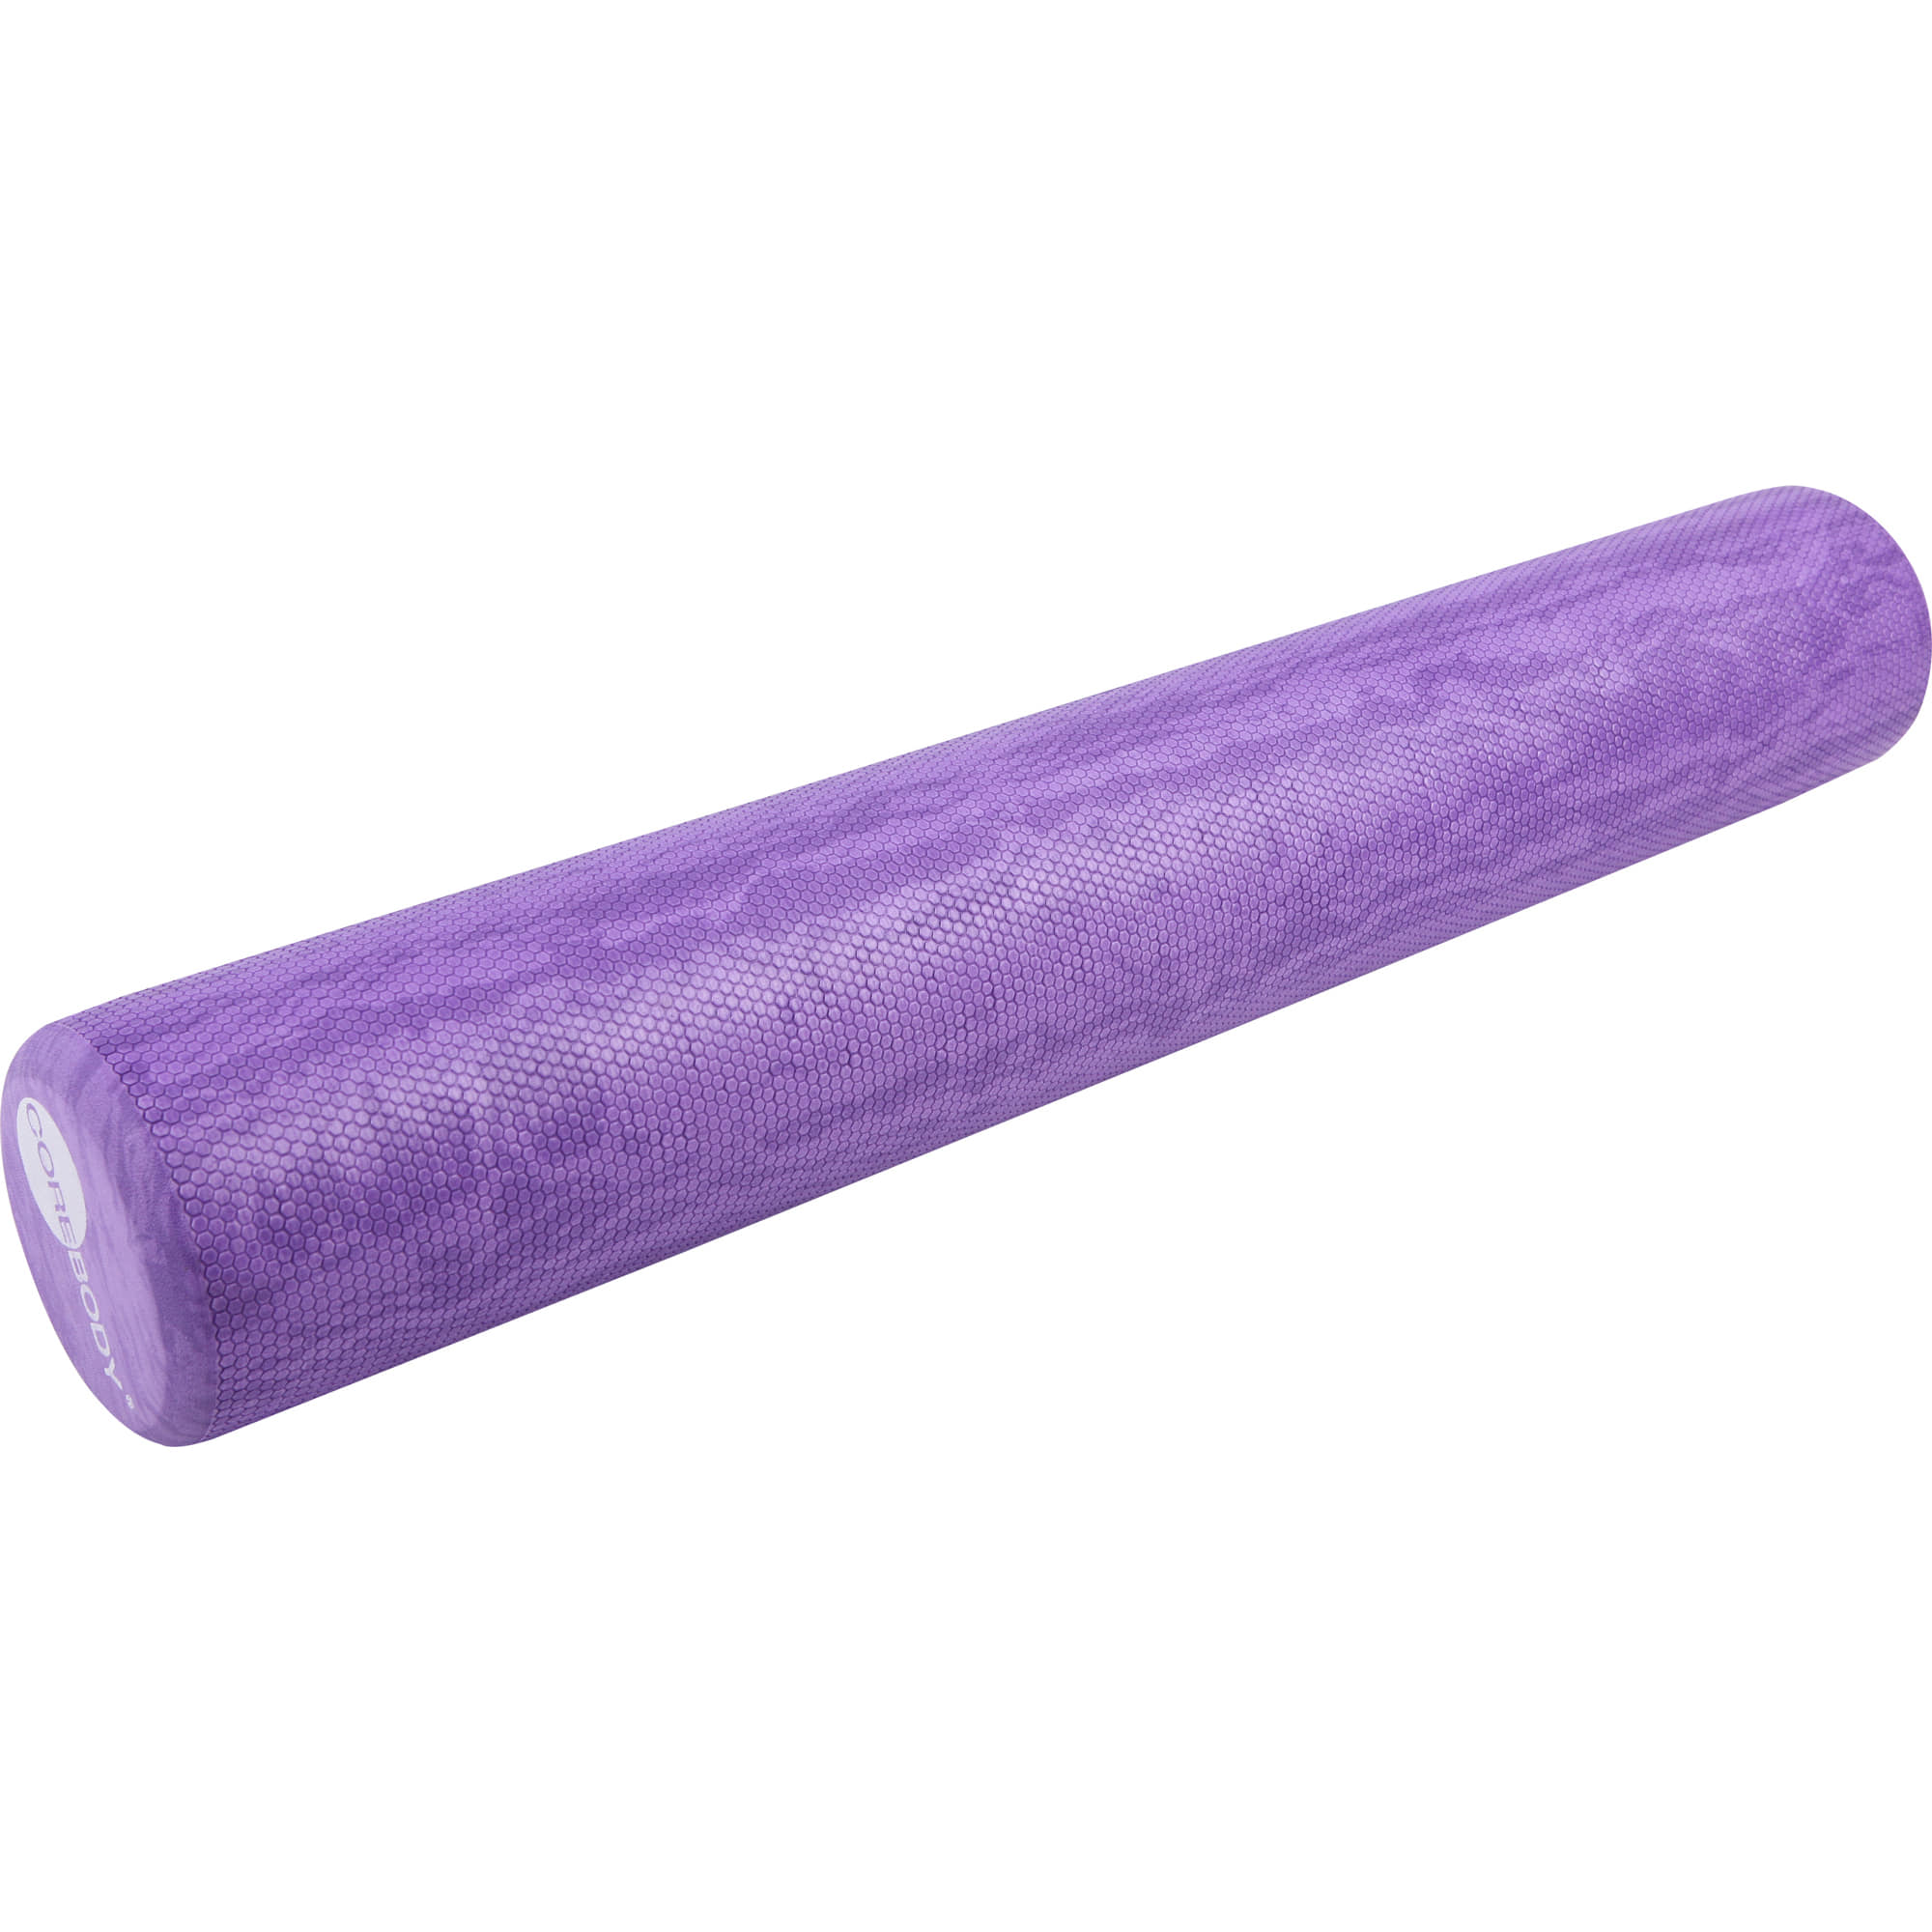 COREBODY® Foam Roller PurpleMarble 91cm